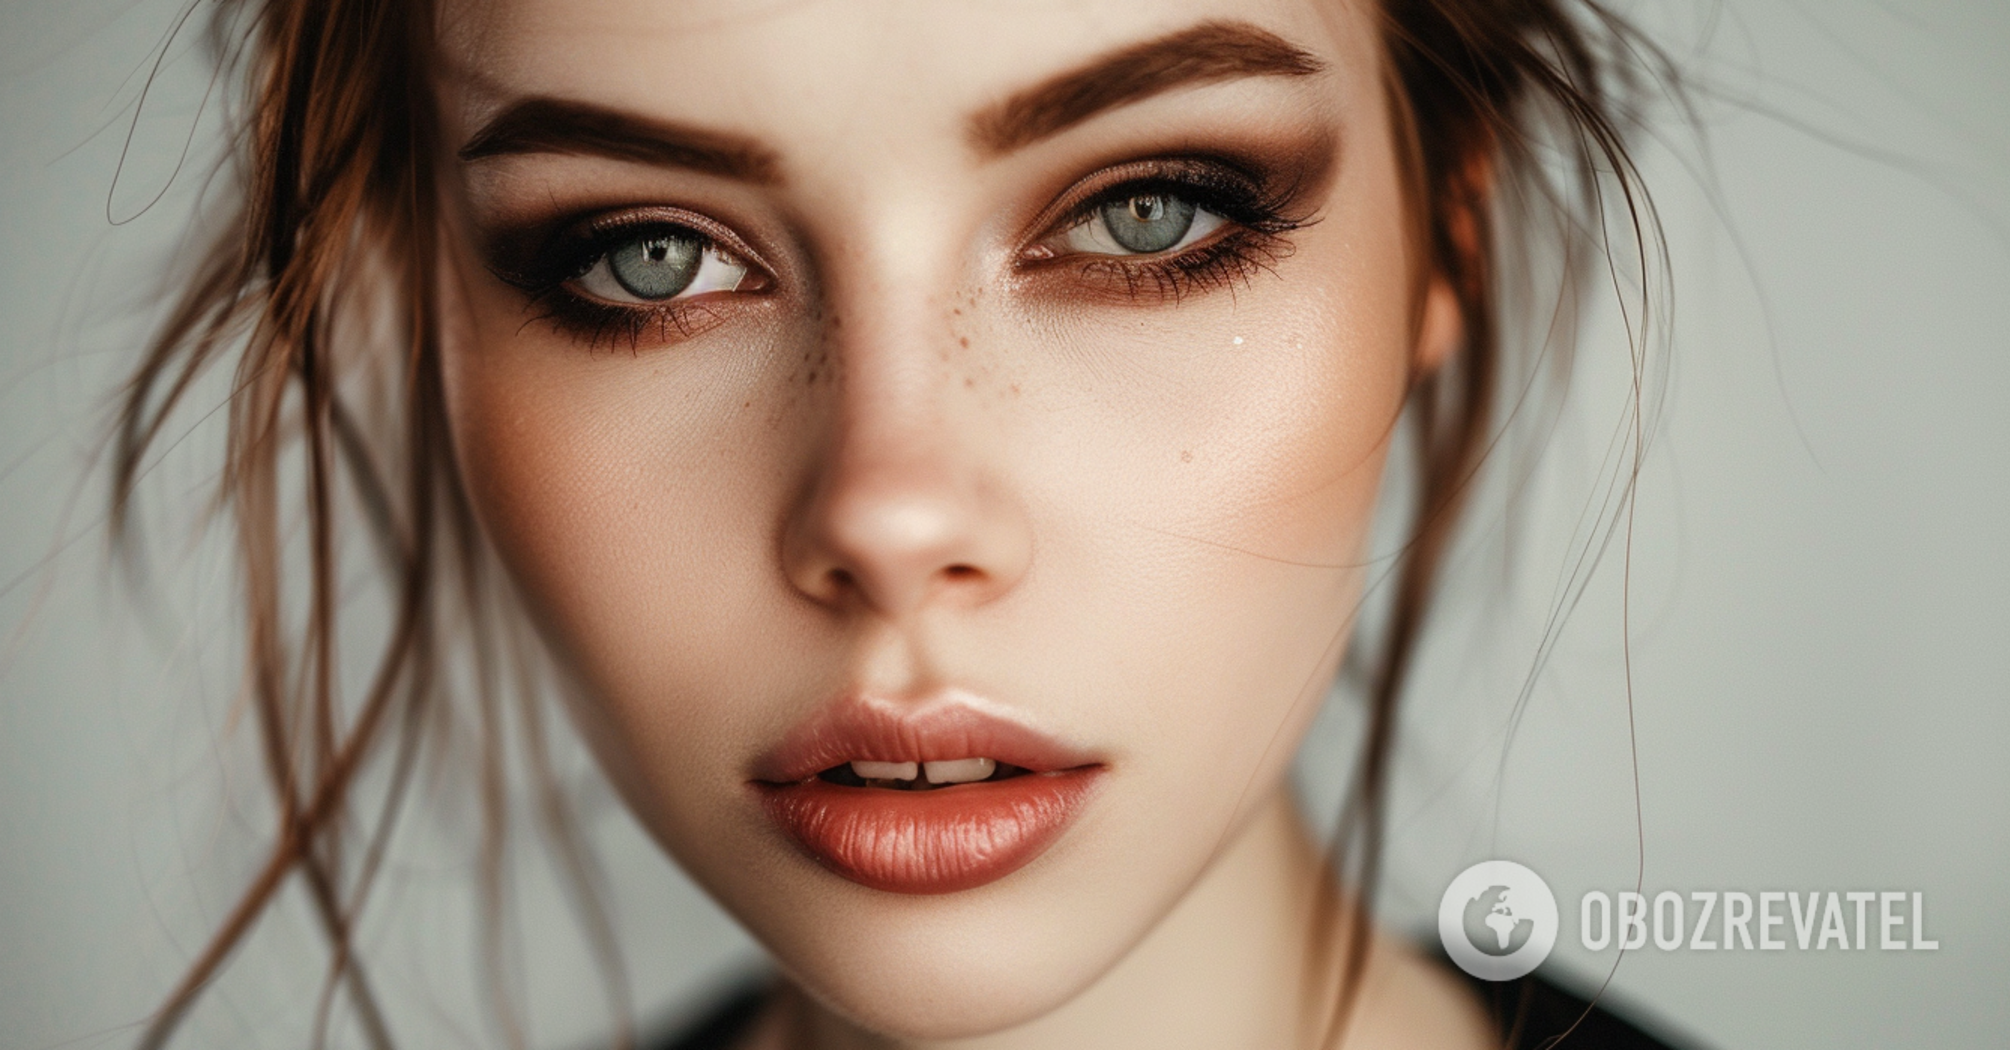 How to make stunning eye makeup: pro tricks